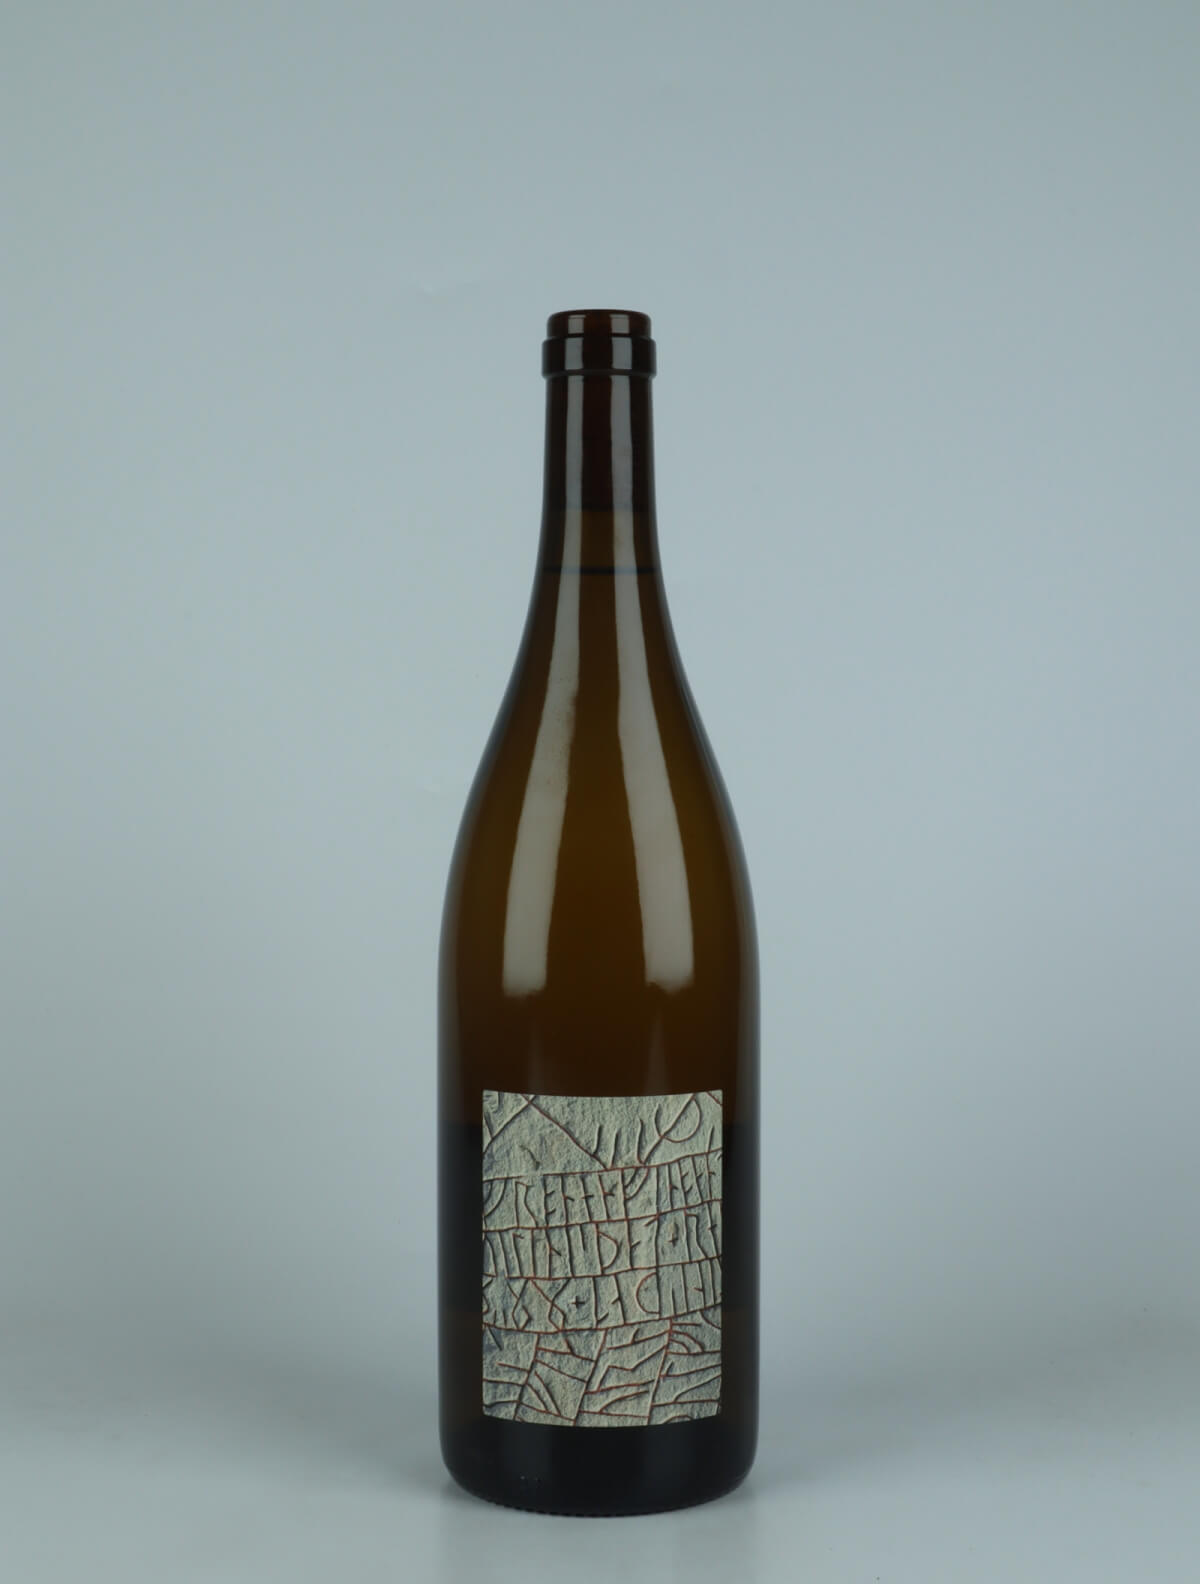 A bottle 2022 Menu Pineau - Romorantin White wine from Frantz Saumon, Loire in France